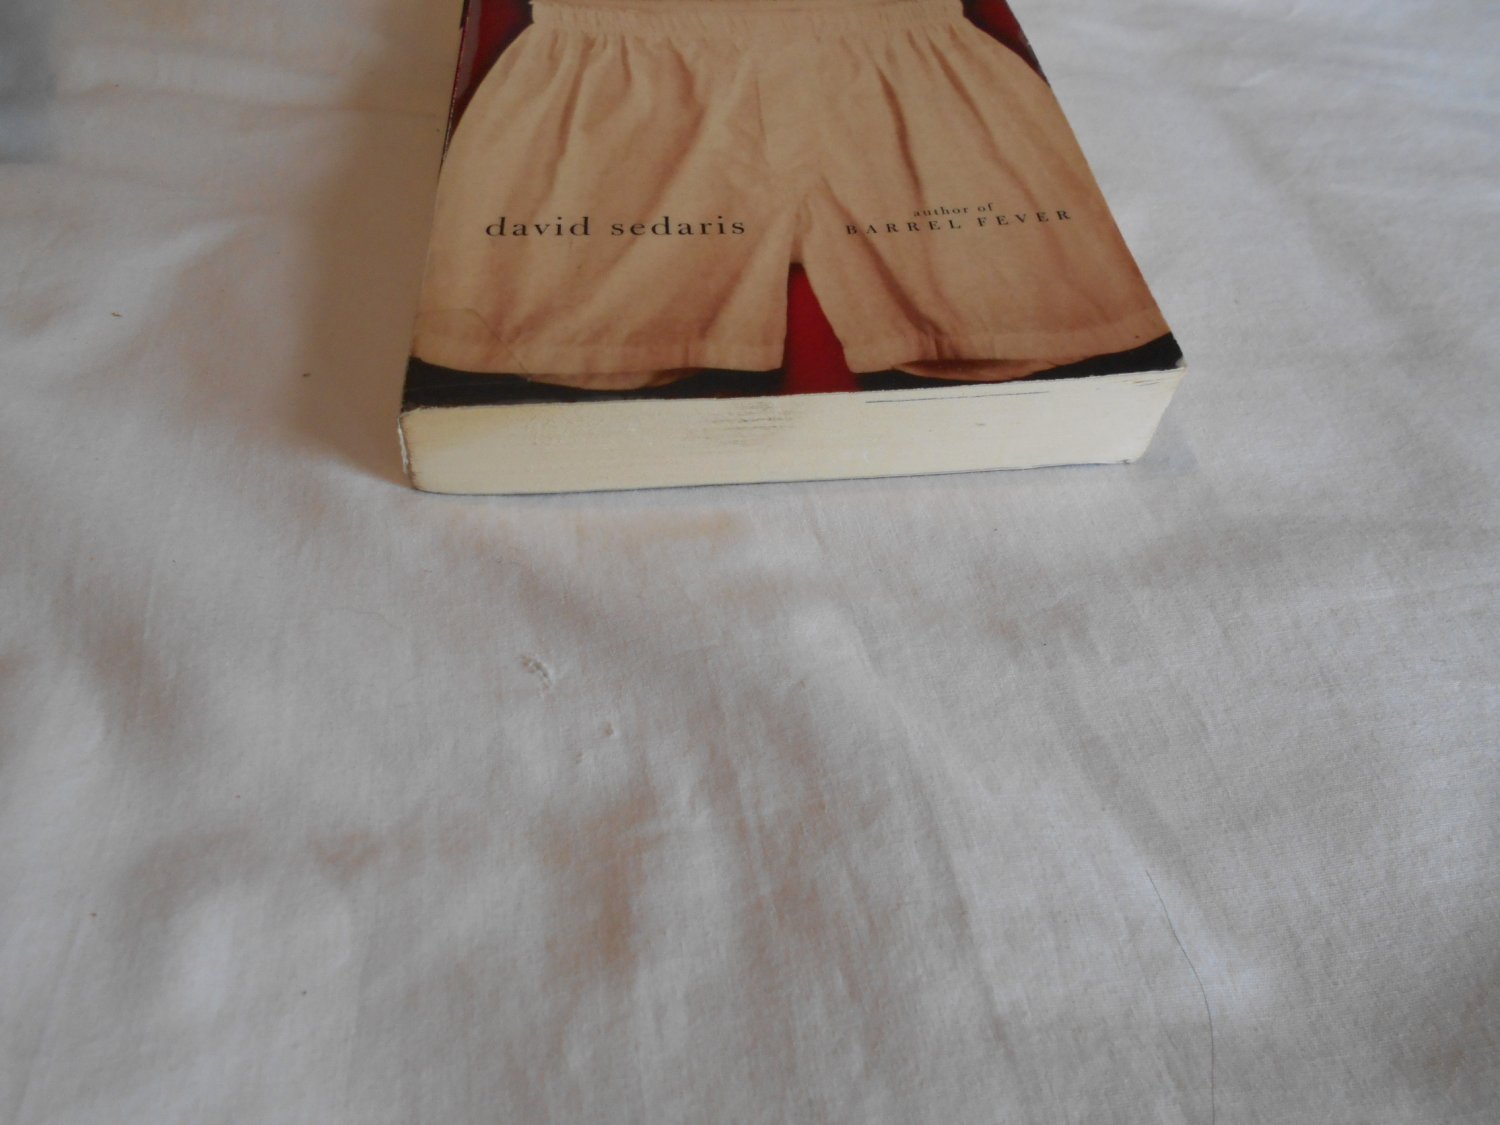 Naked by David Sedaris (1997) (B21) Biography, American Humorist, Humor